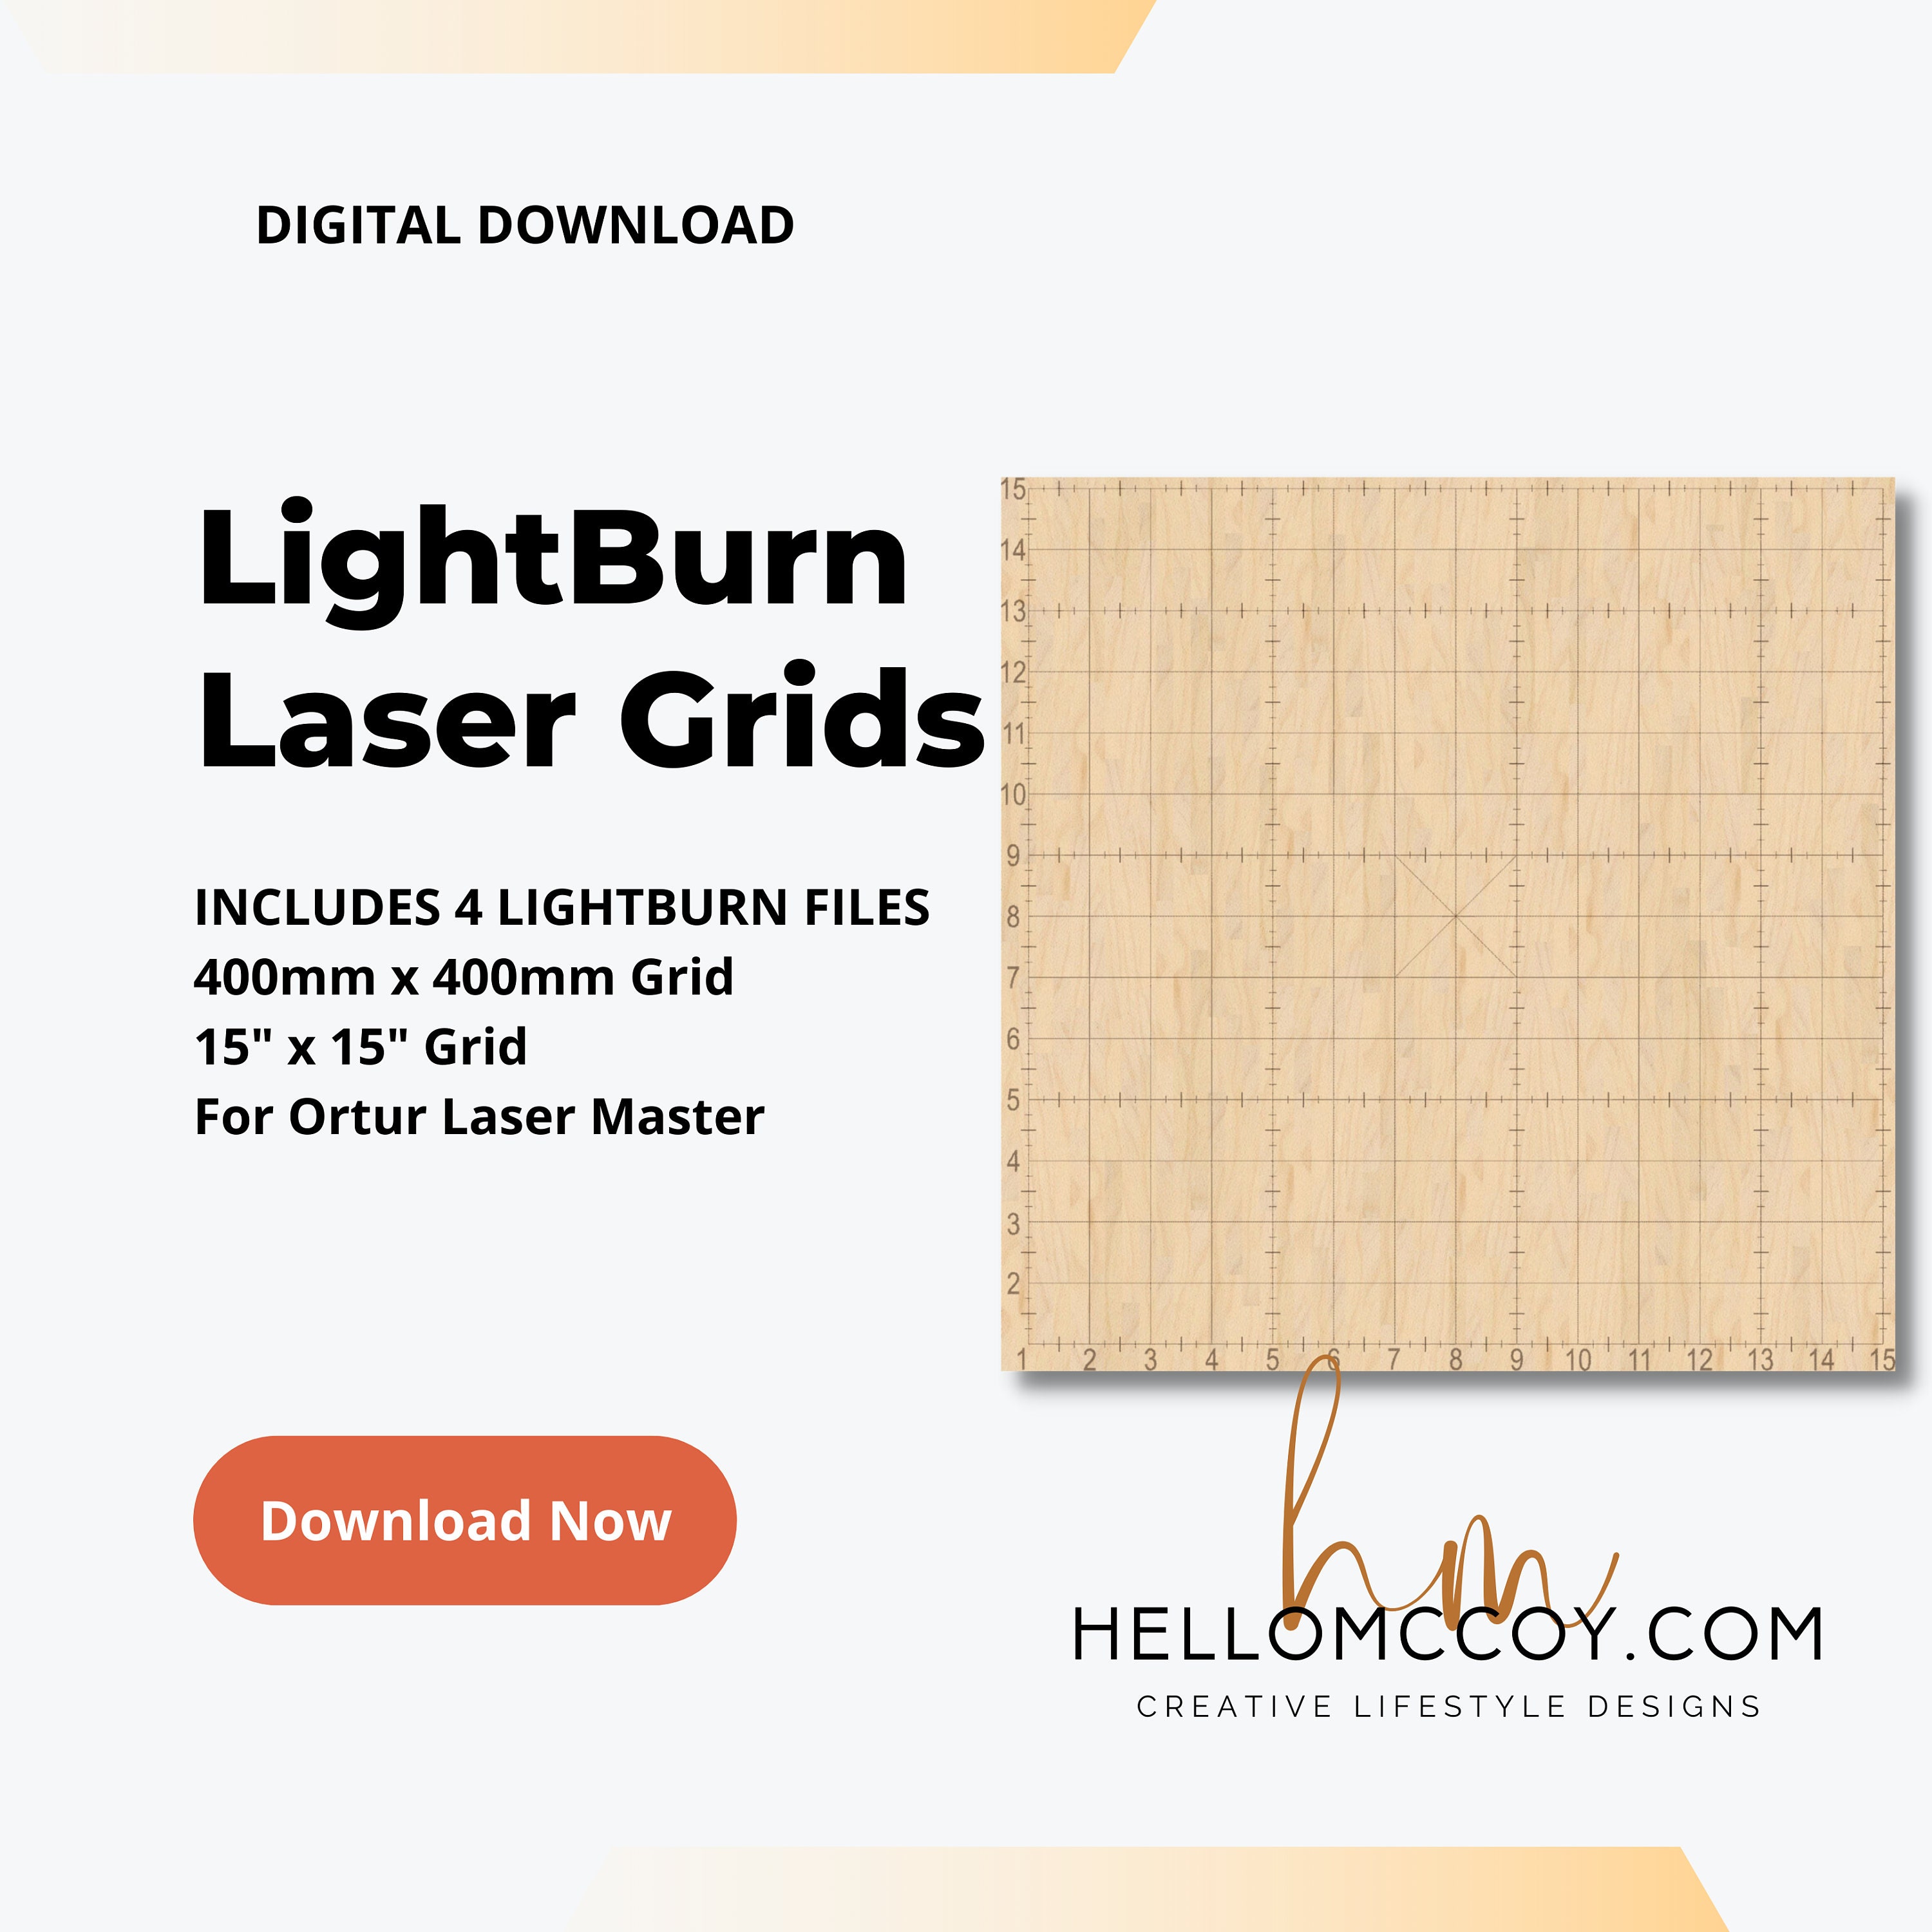 Ortur Laser Master 2 Enclosure Imperial 